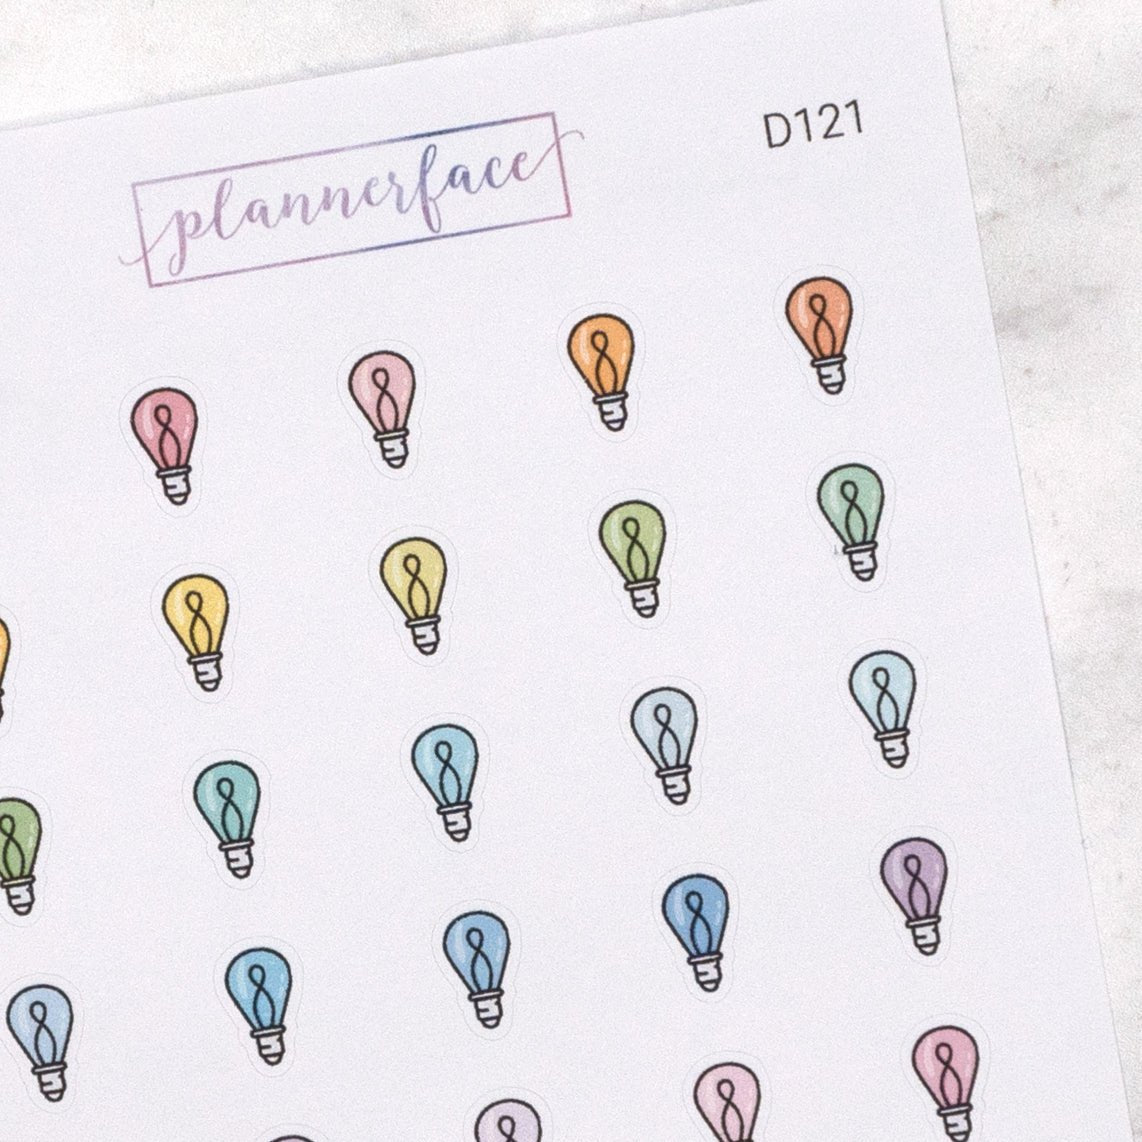 Light Bulb Multicolour Doodles by Plannerface